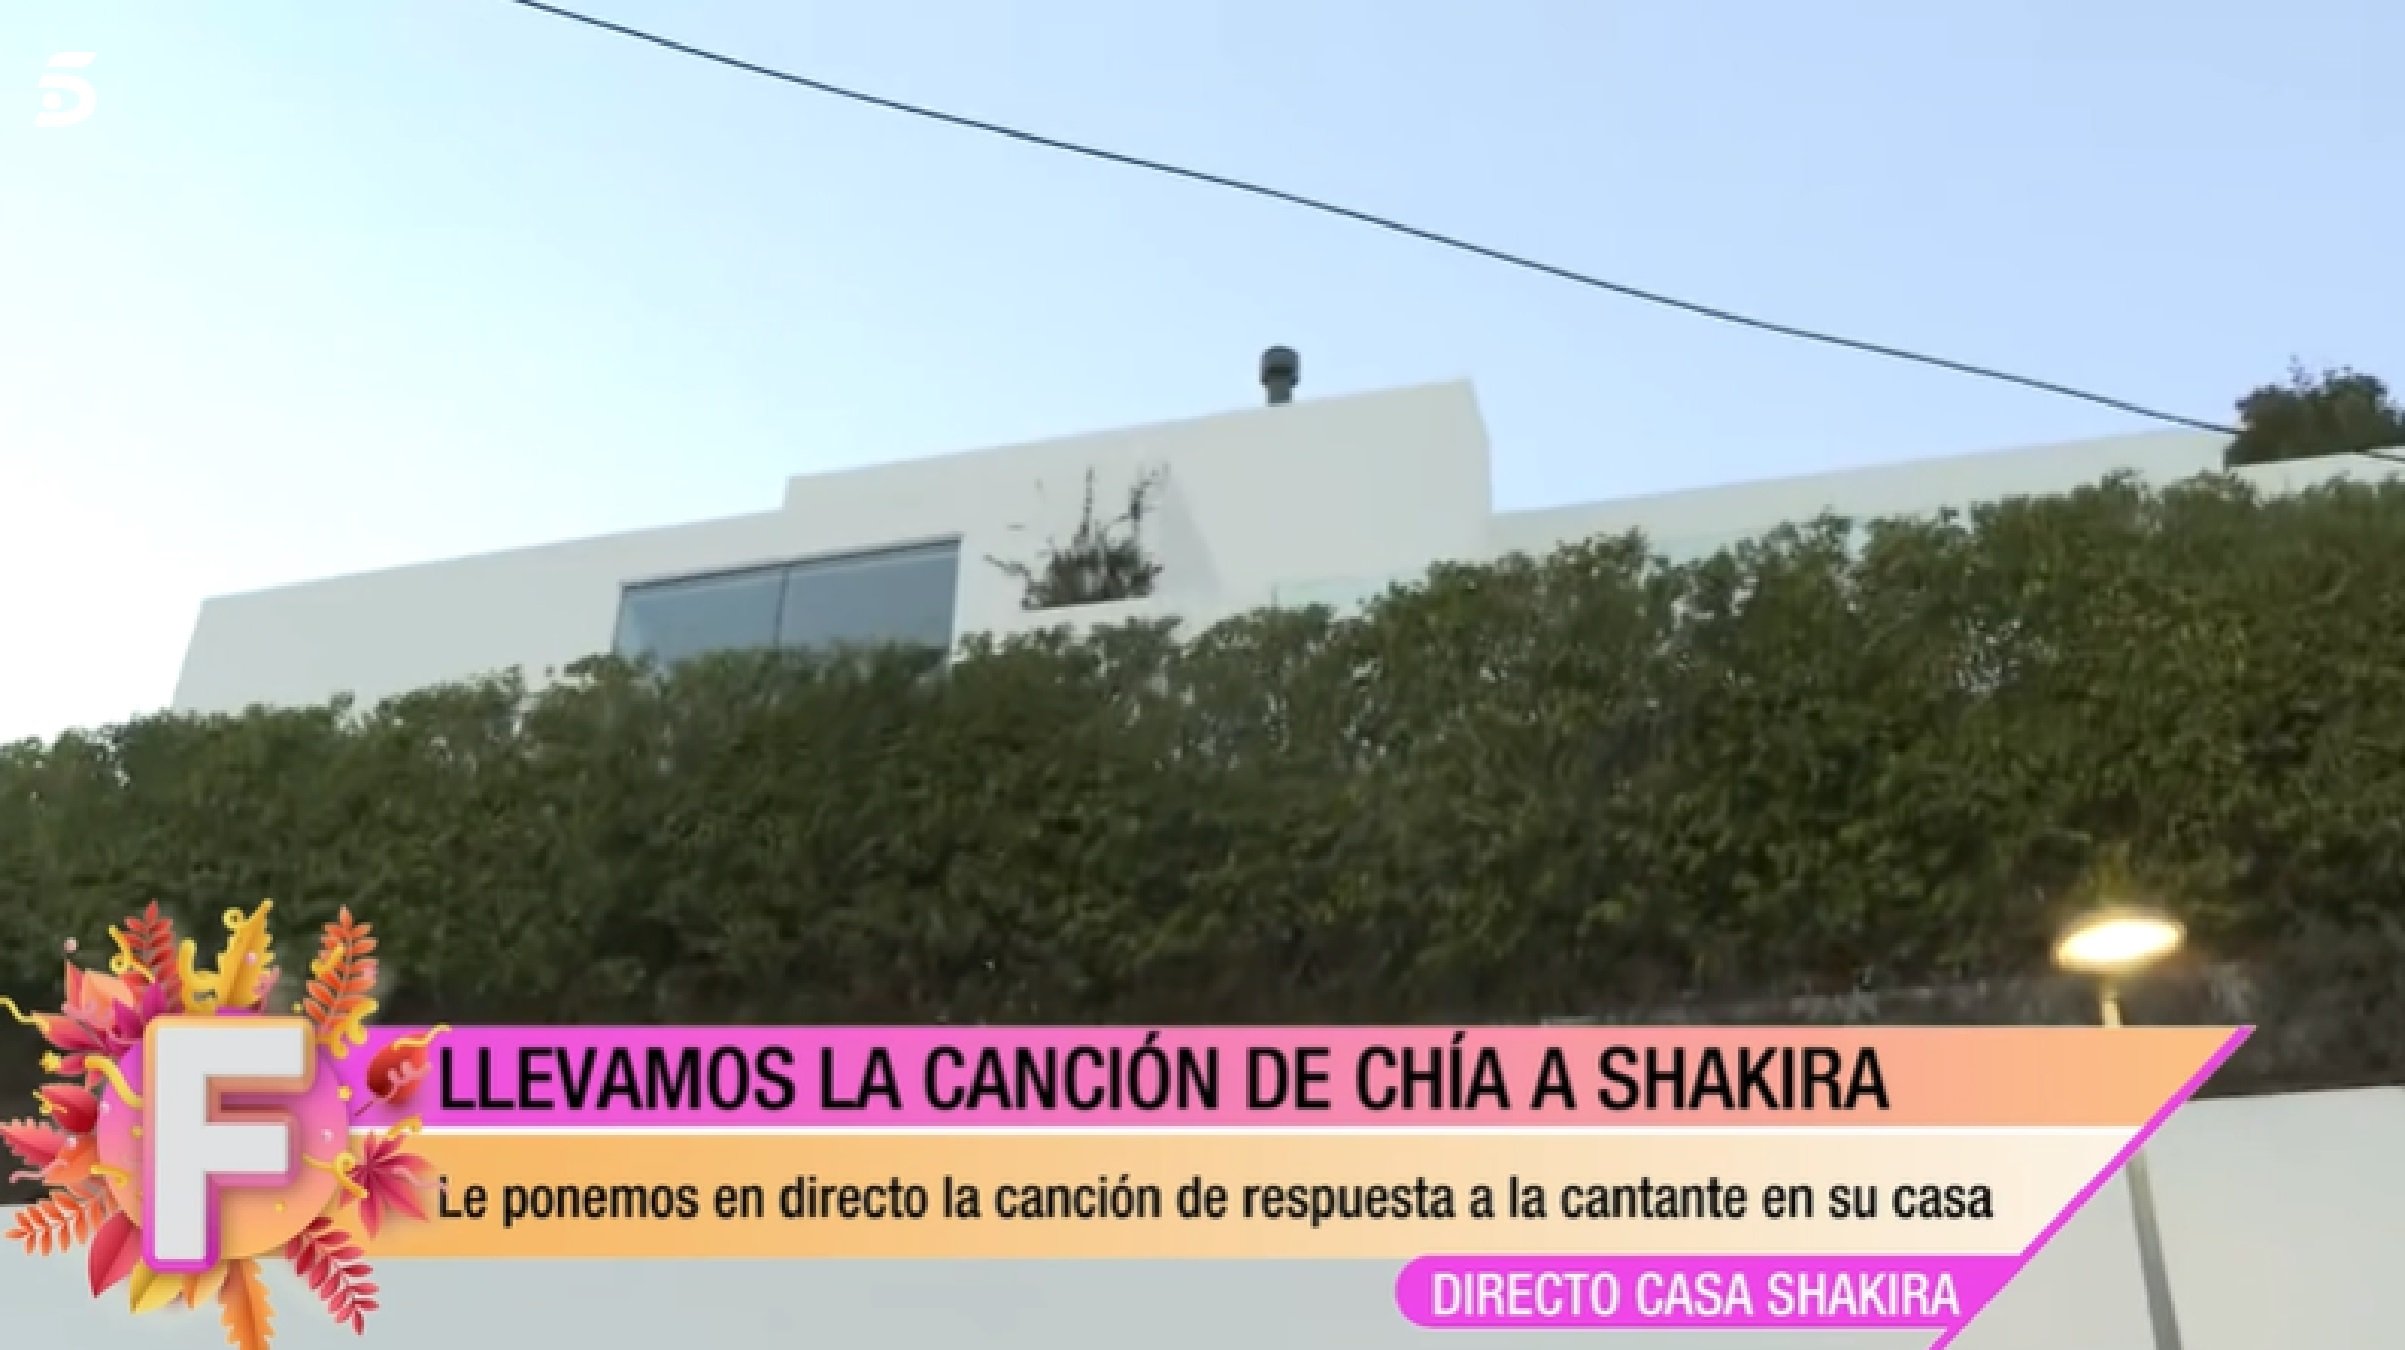 Telecinco humilia Shakira, li posen una cançó de Clara Chía dedicada a ella: què diu la lletra